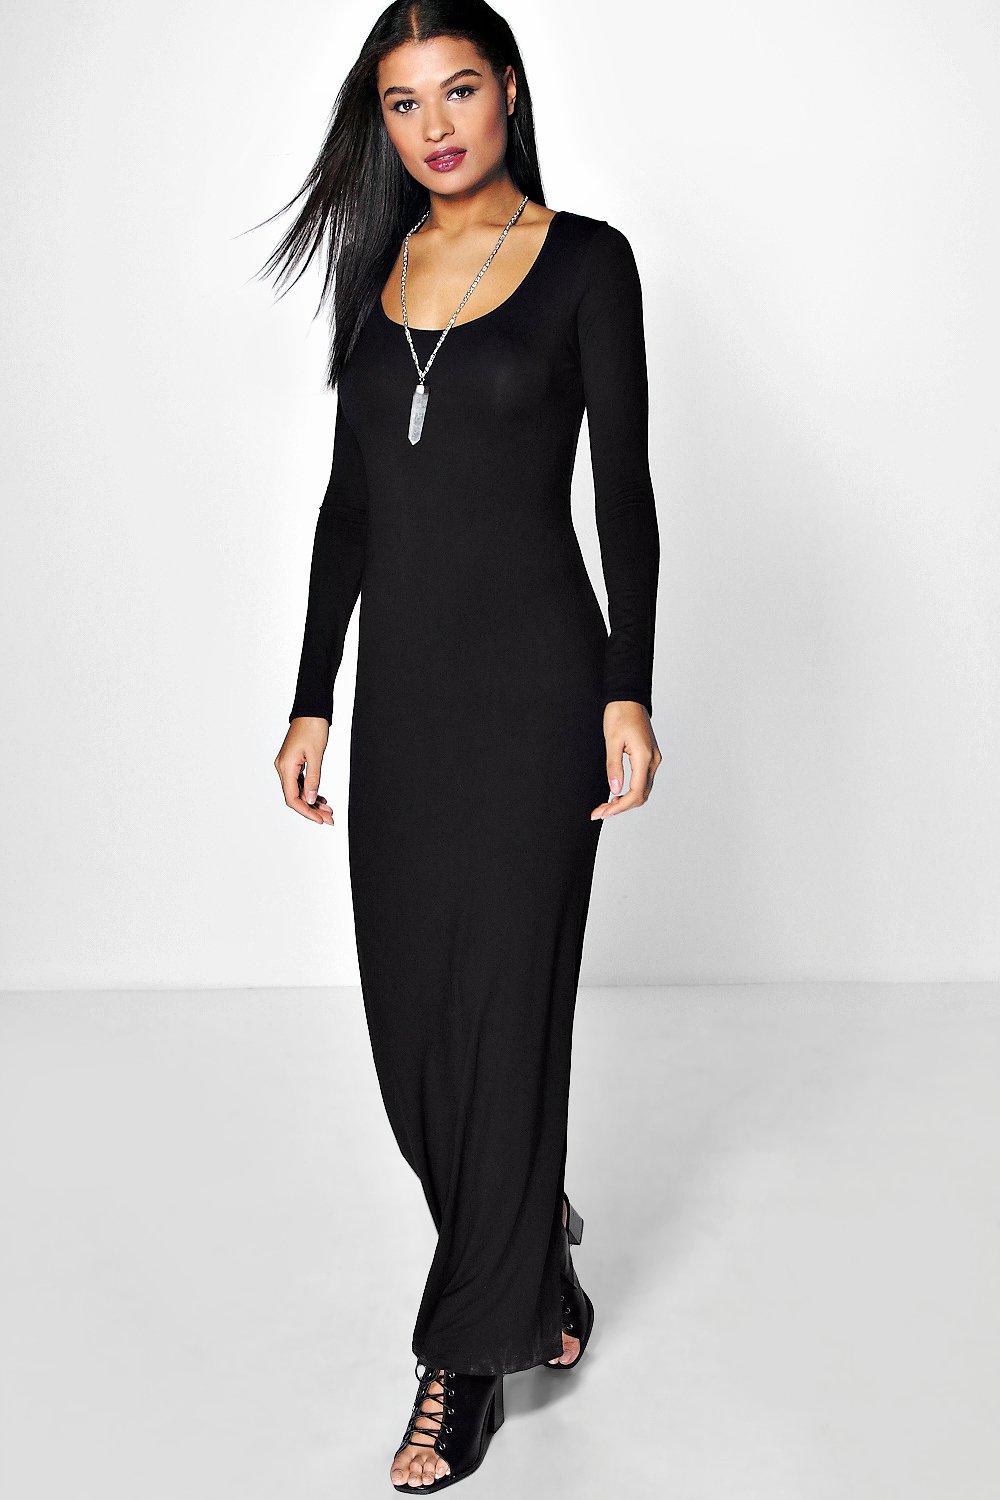 Boohoo Womens Anna Long Sleeve Maxi Dress | eBay